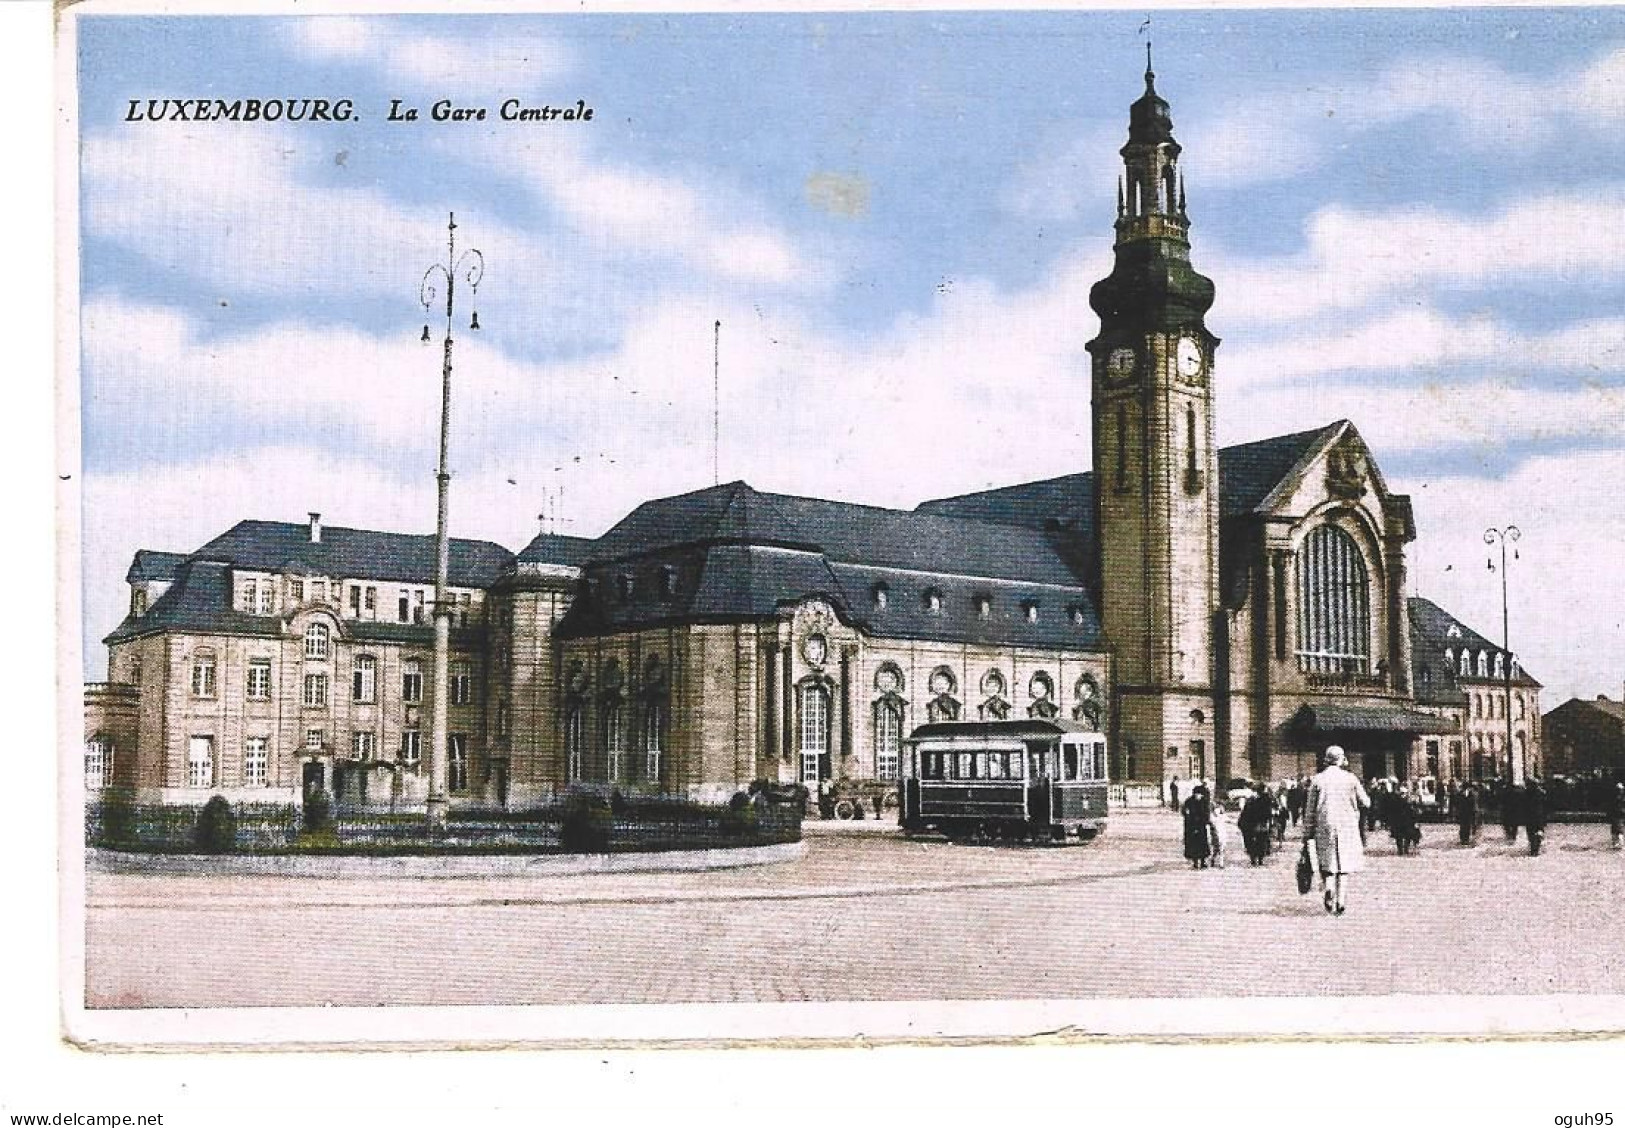 LUXEMBOURG - La Gare Centrale - Luxemburg - Stad